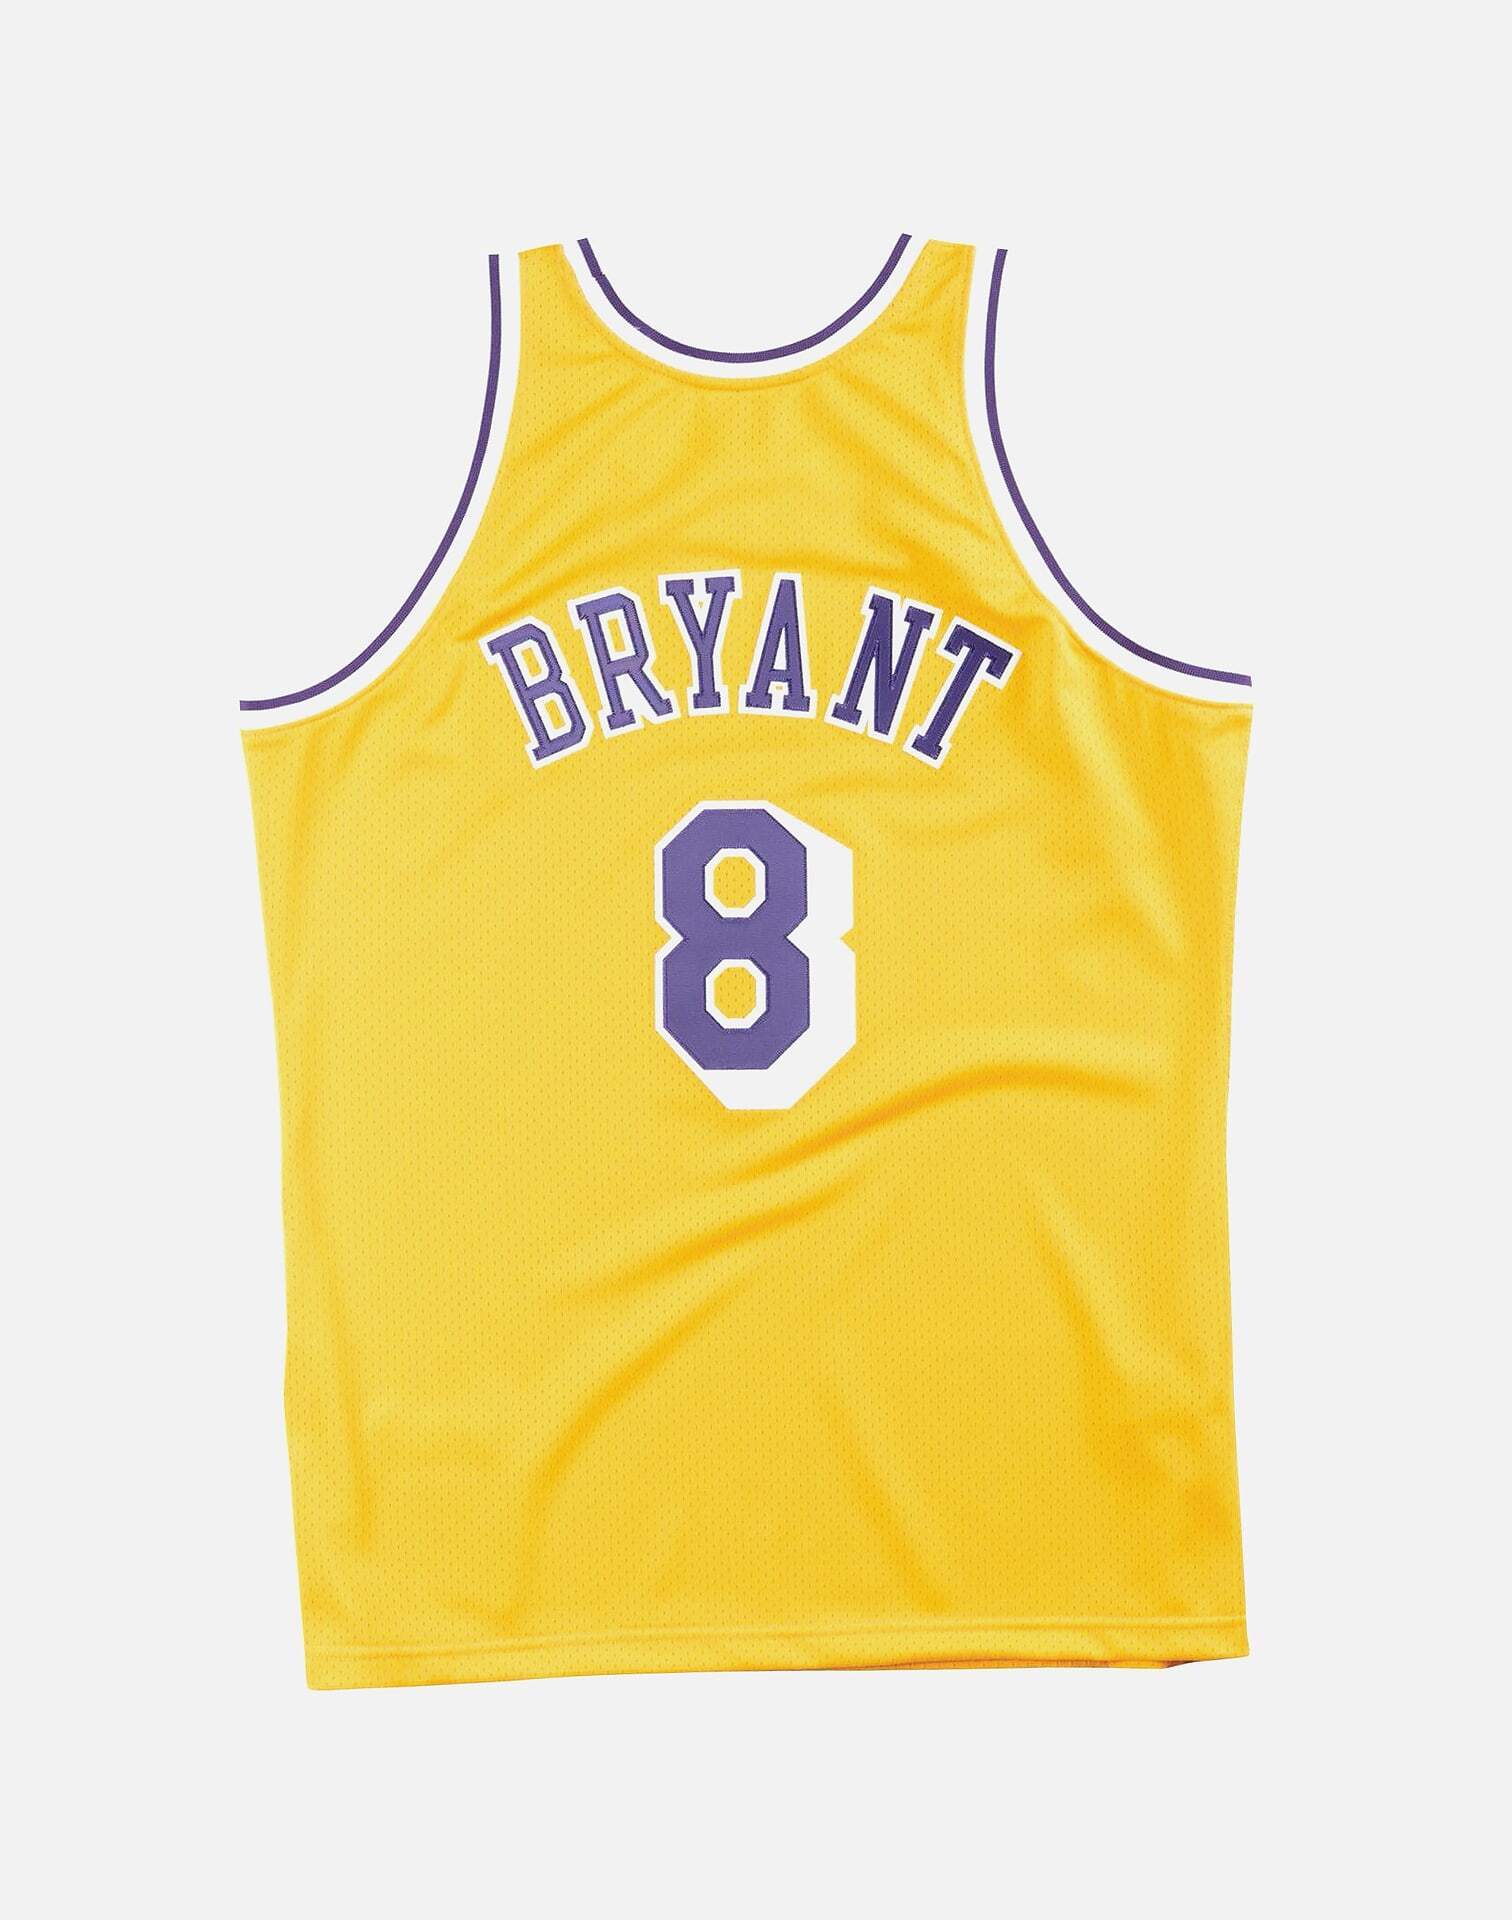 Kobe Bryant #8  Kobe bryant pictures, Kobe bryant, Kobe bryant 8